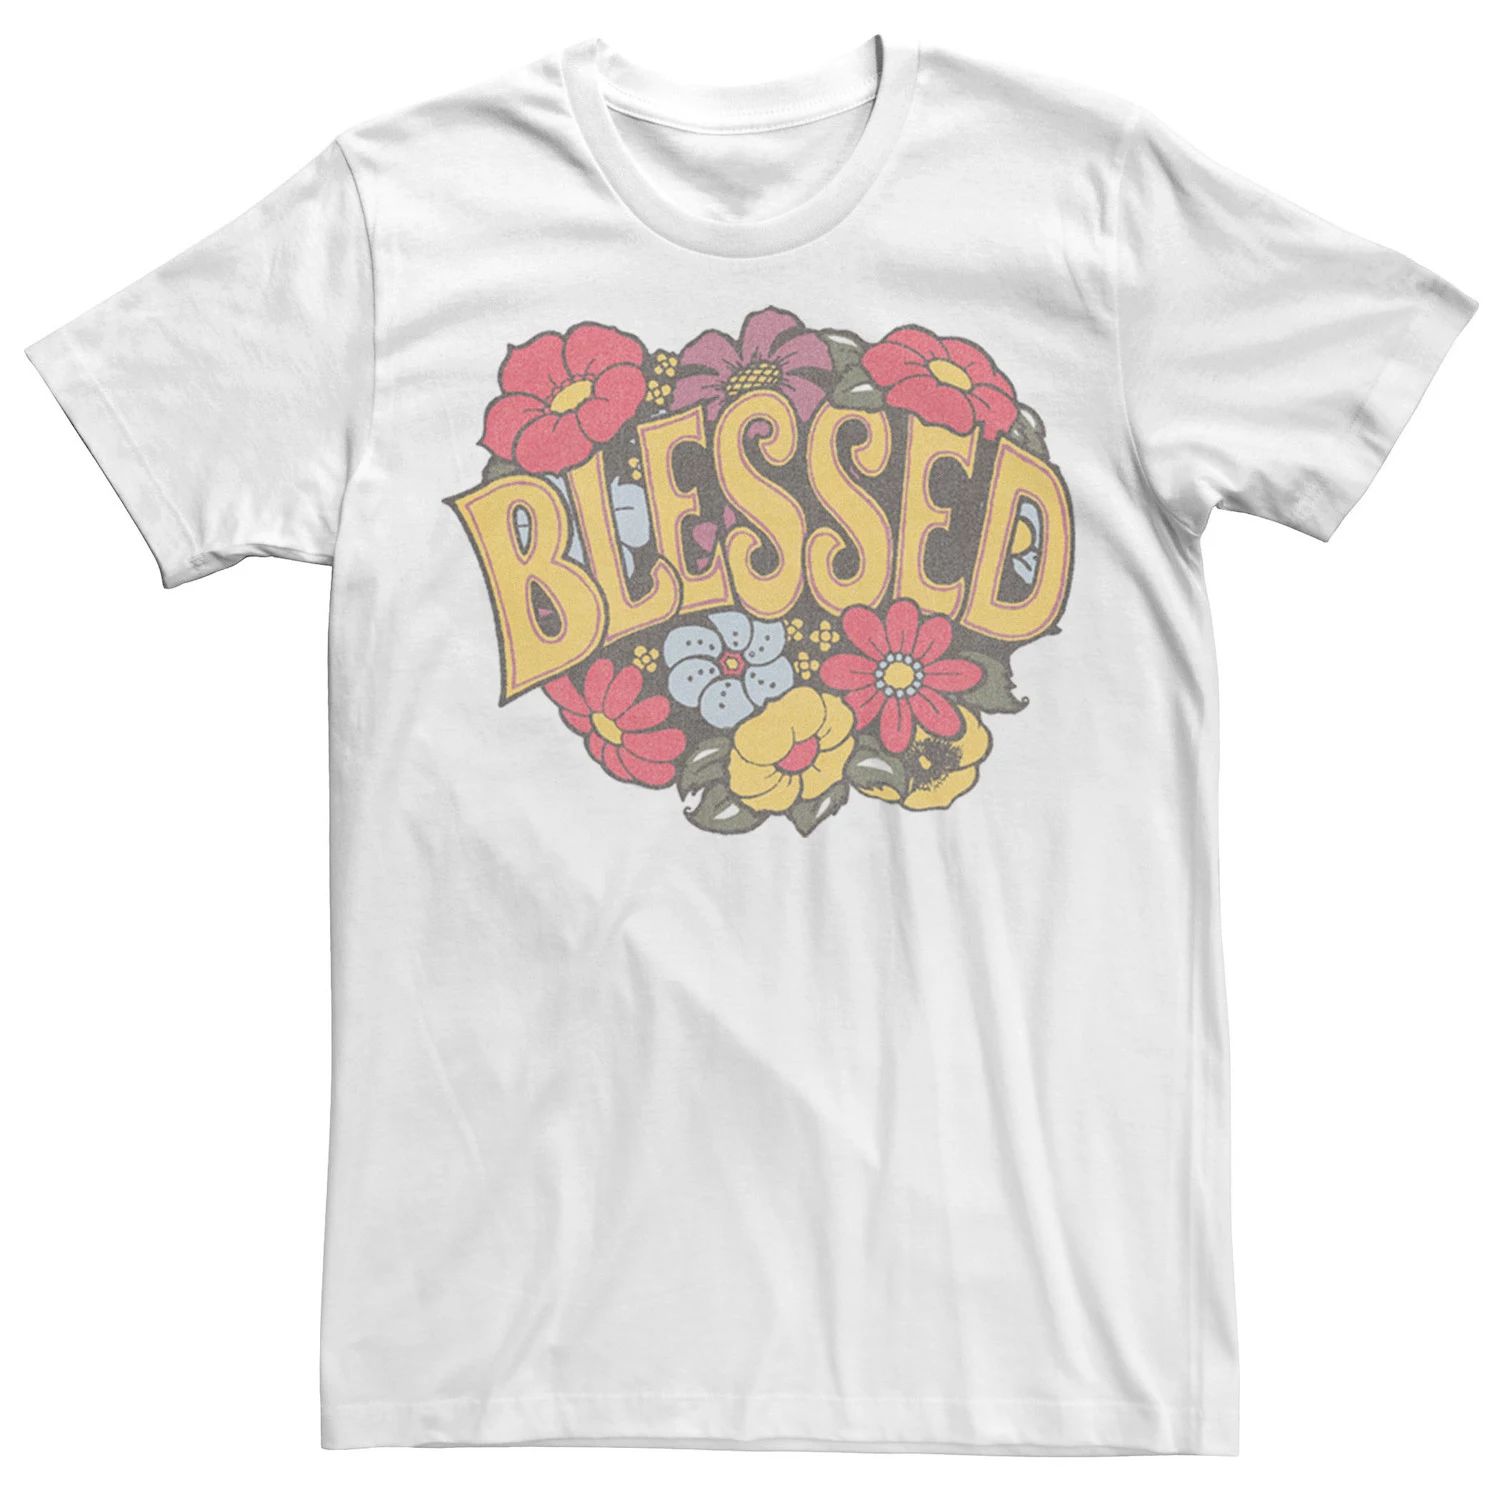 Мужская футболка с цветочным венком Blessed, White Licensed Character, белый мужская футболка зайка с цветочным венком l желтый